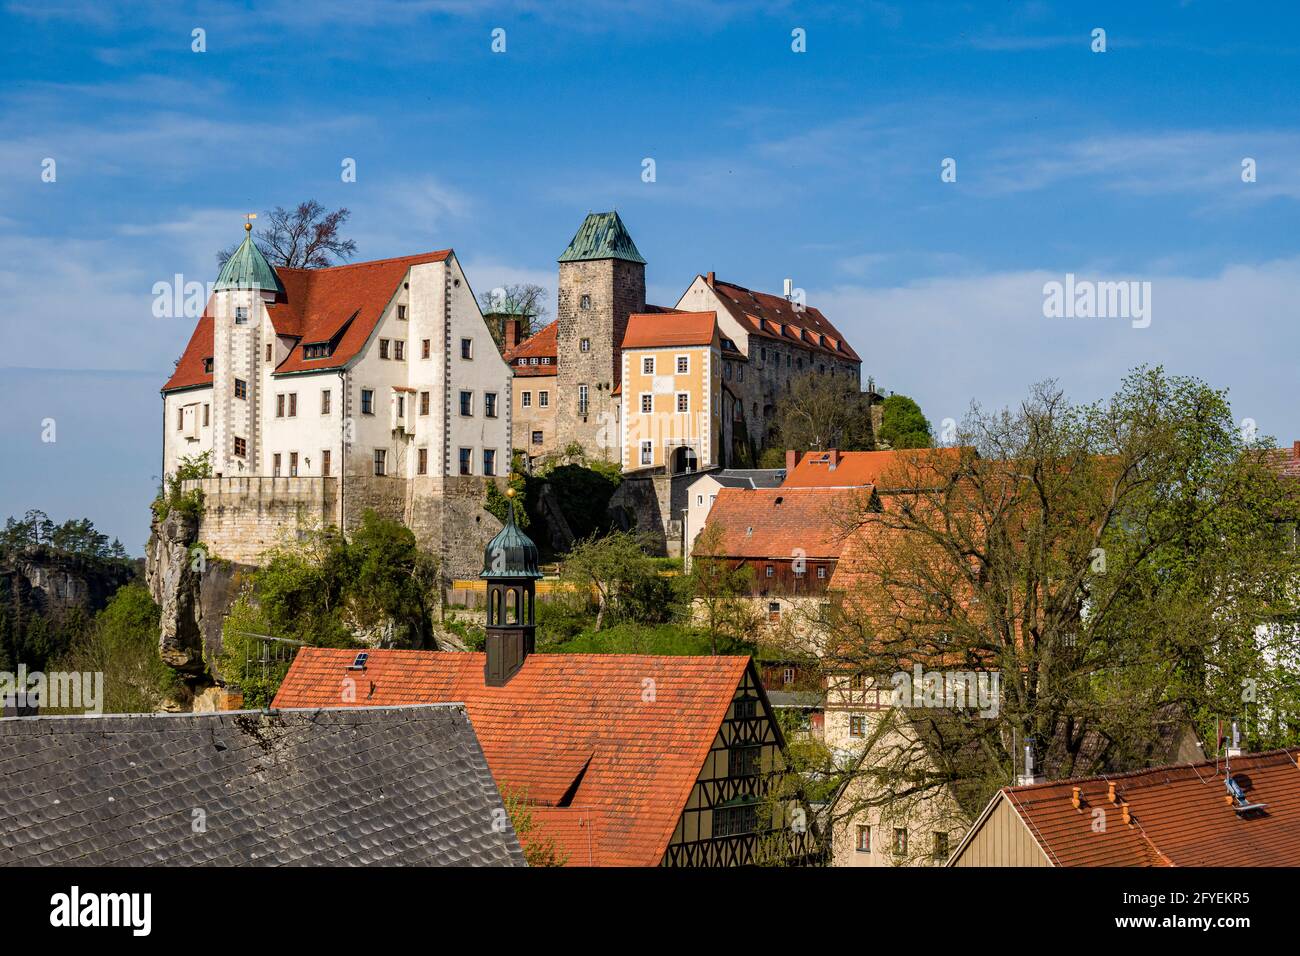 Castello di Hohnstein, che si affaccia sui tetti della piccola città. Foto Stock